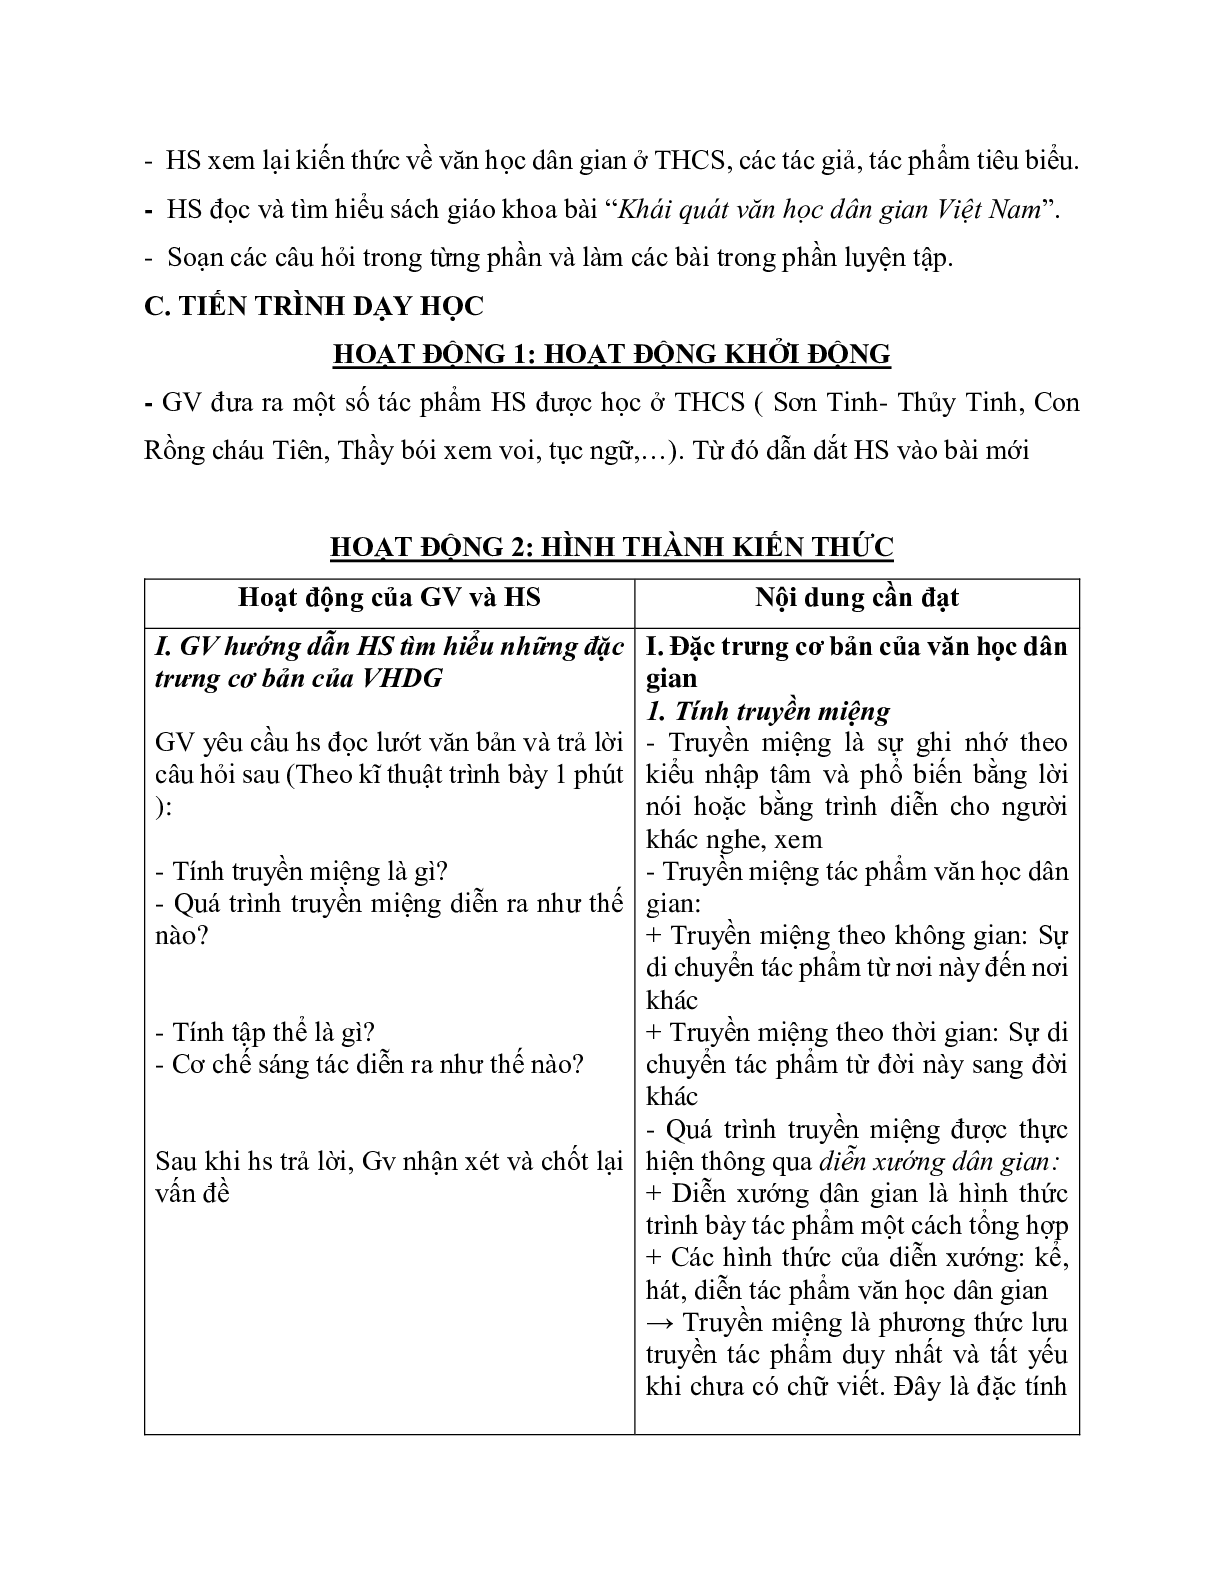 Giáo án ngữ văn lớp 10 Tiết 3, 4: Khái quát văn học dân gian Việt Nam (trang 2)